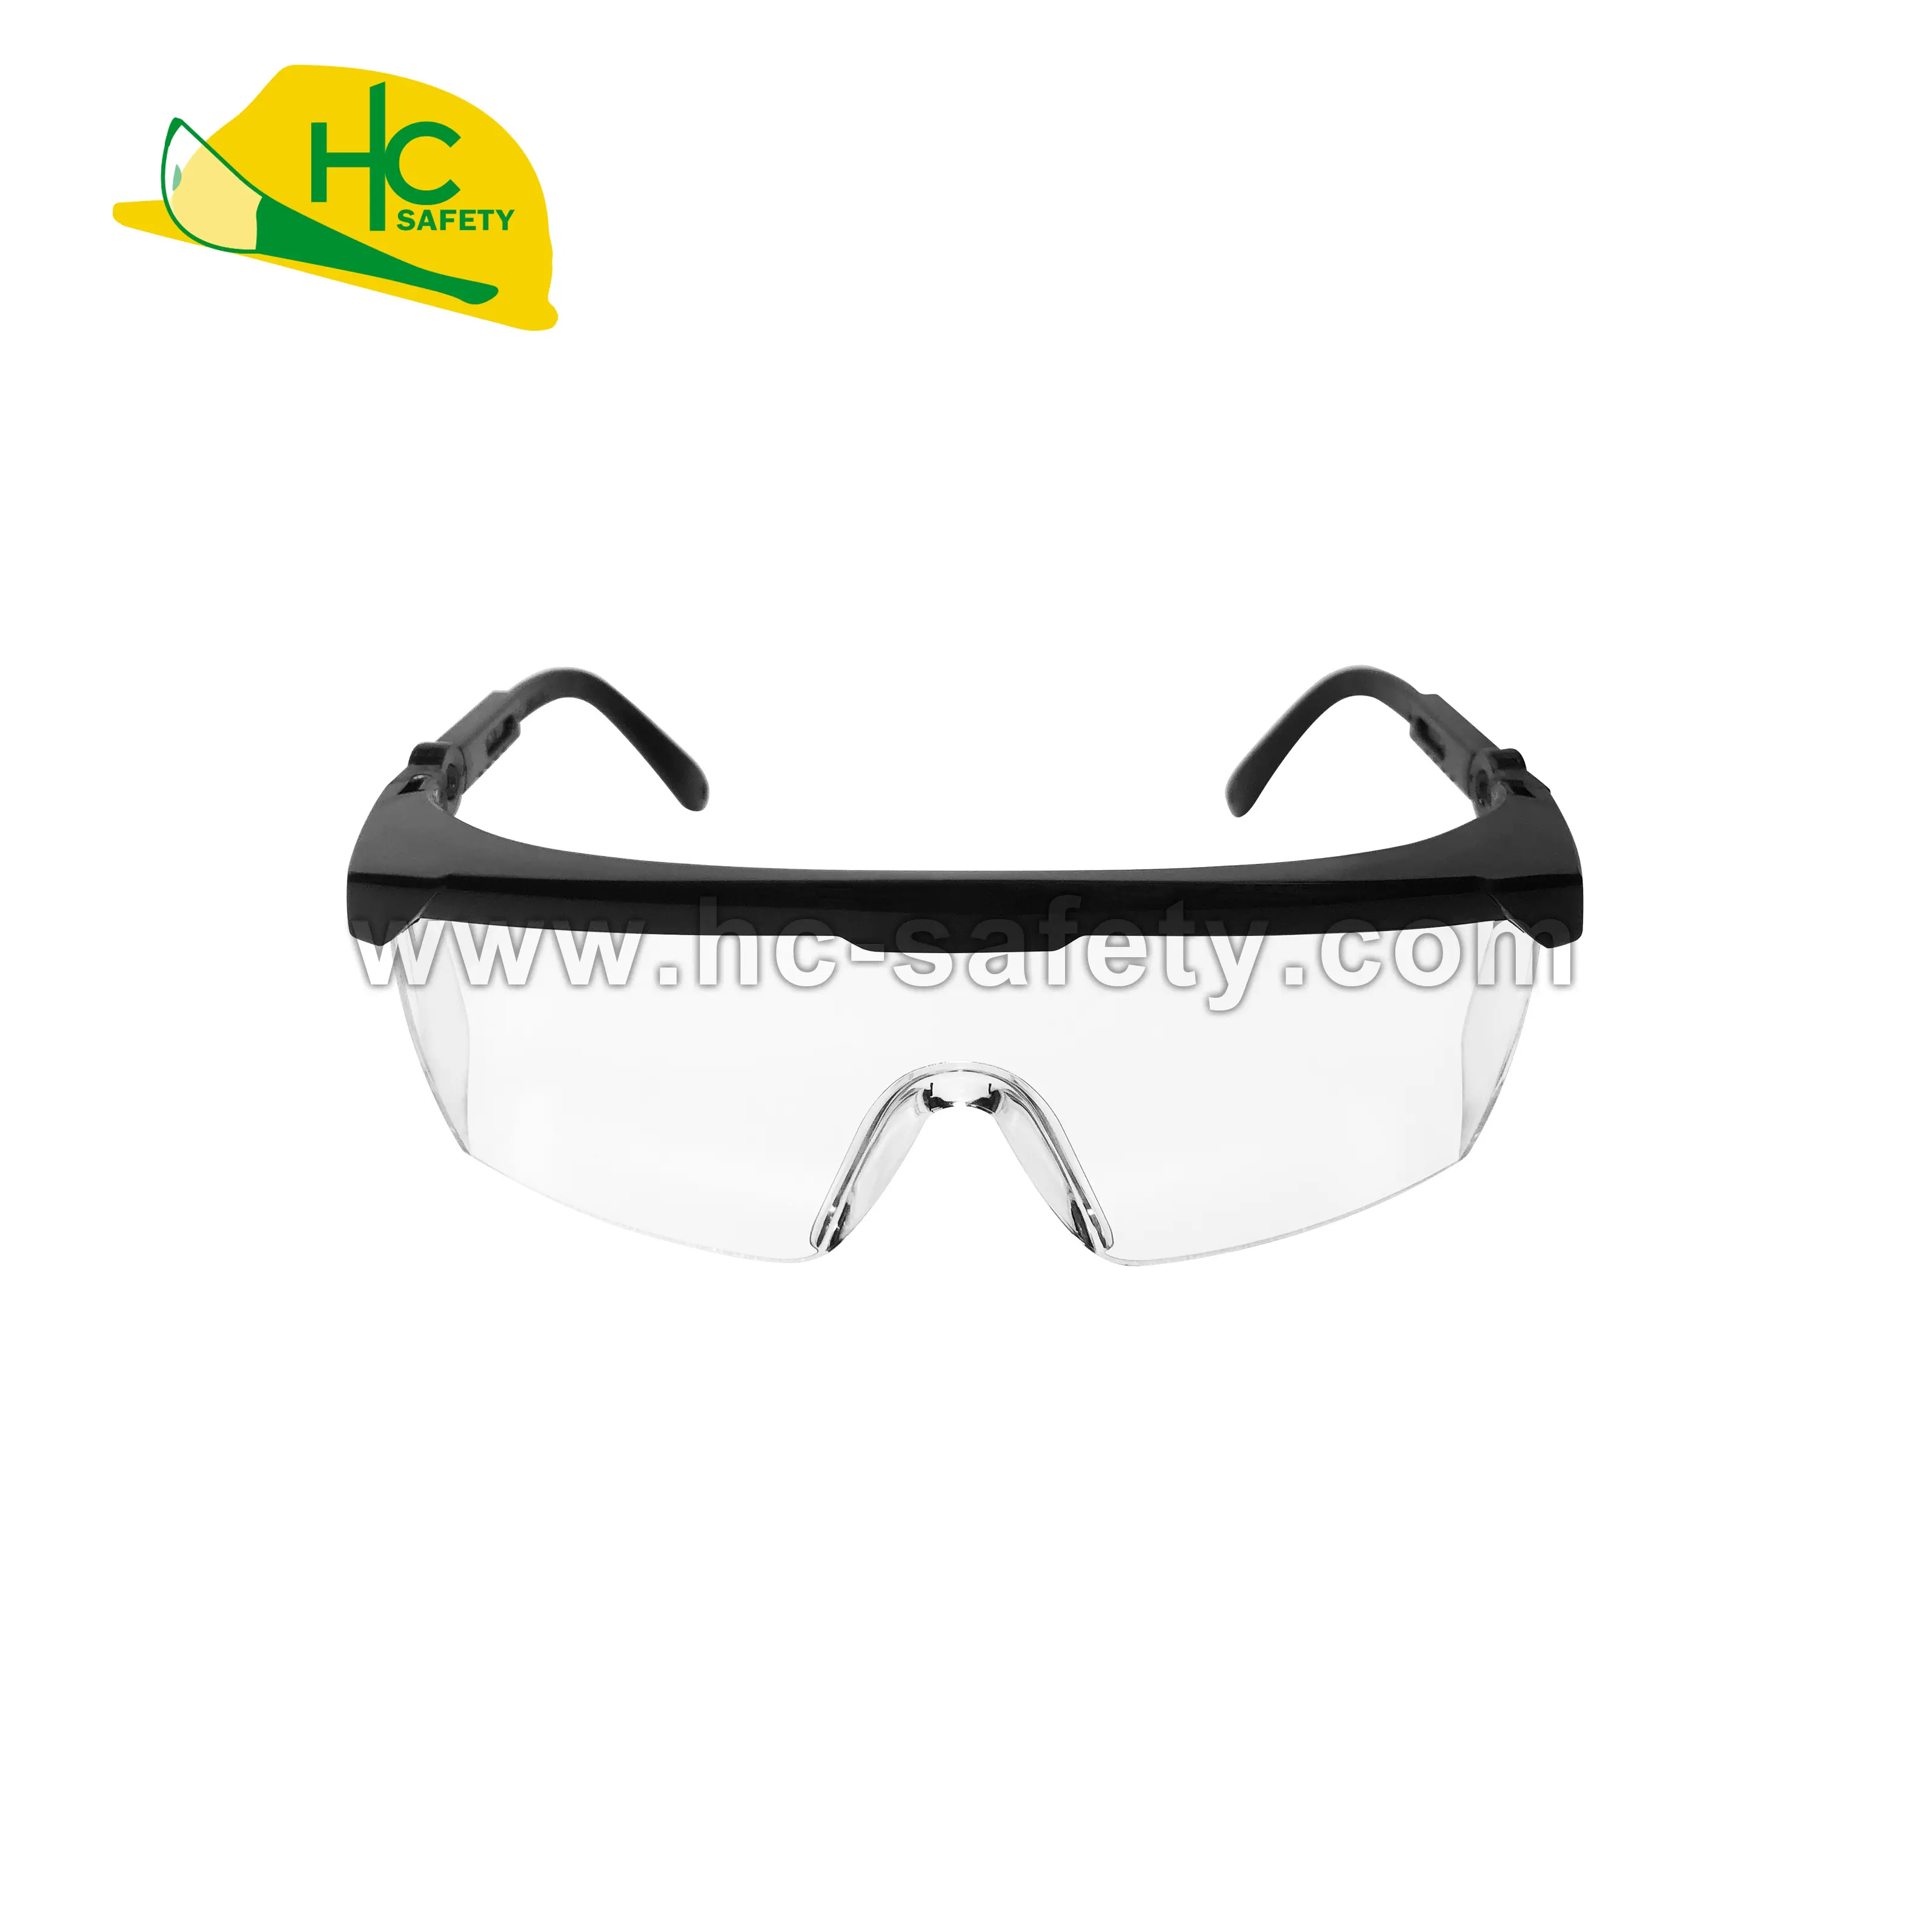 P650RR kacamata pelindung, pelindung mata sebagai nzs 1337 UV380, kacamata keselamatan pelindung sisi gigi, peralatan keselamatan konstruksi